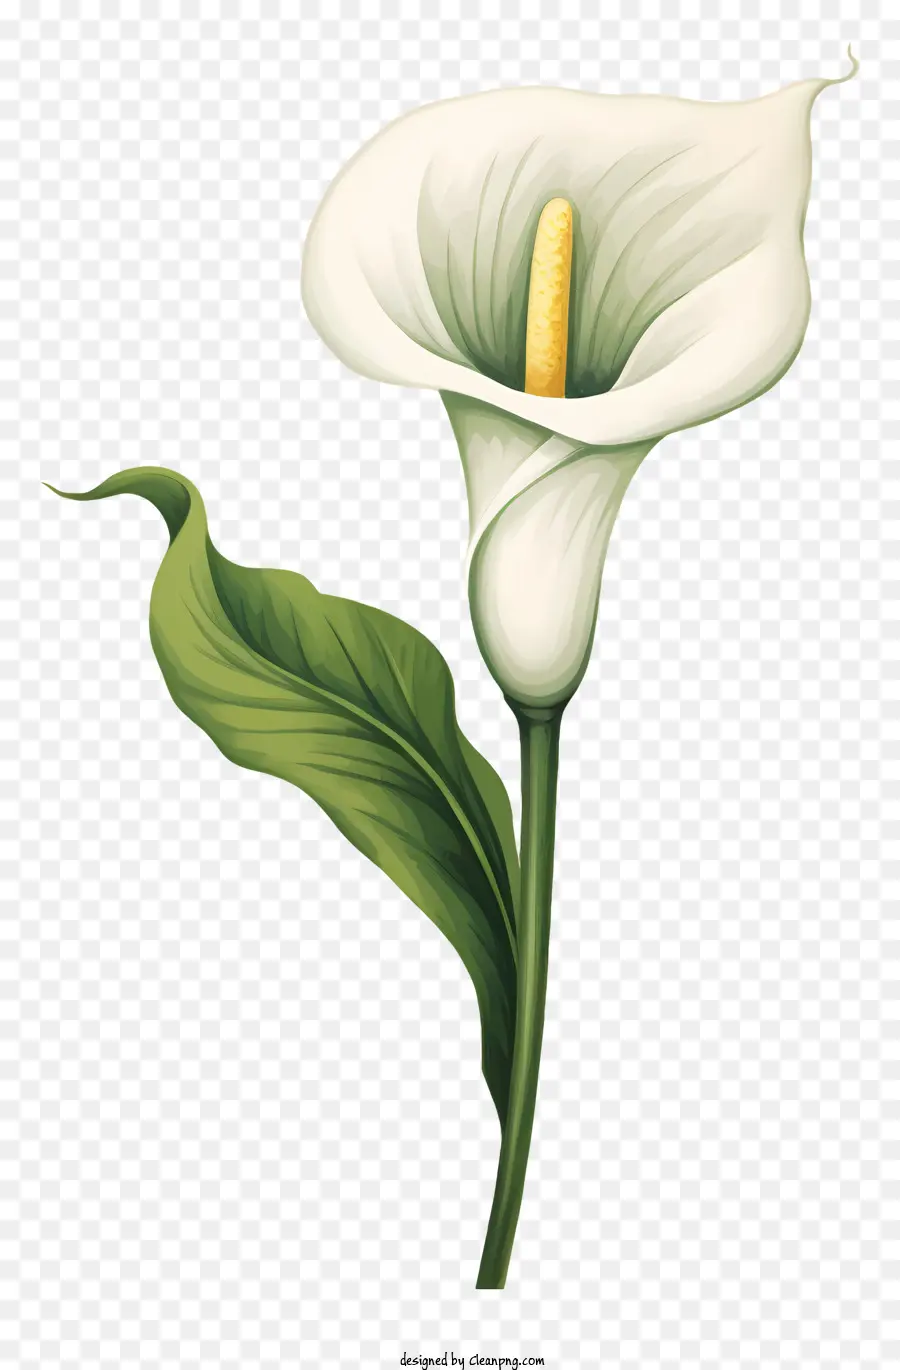 hoa trắng - White calla lily trên nền đen trong nở hoa